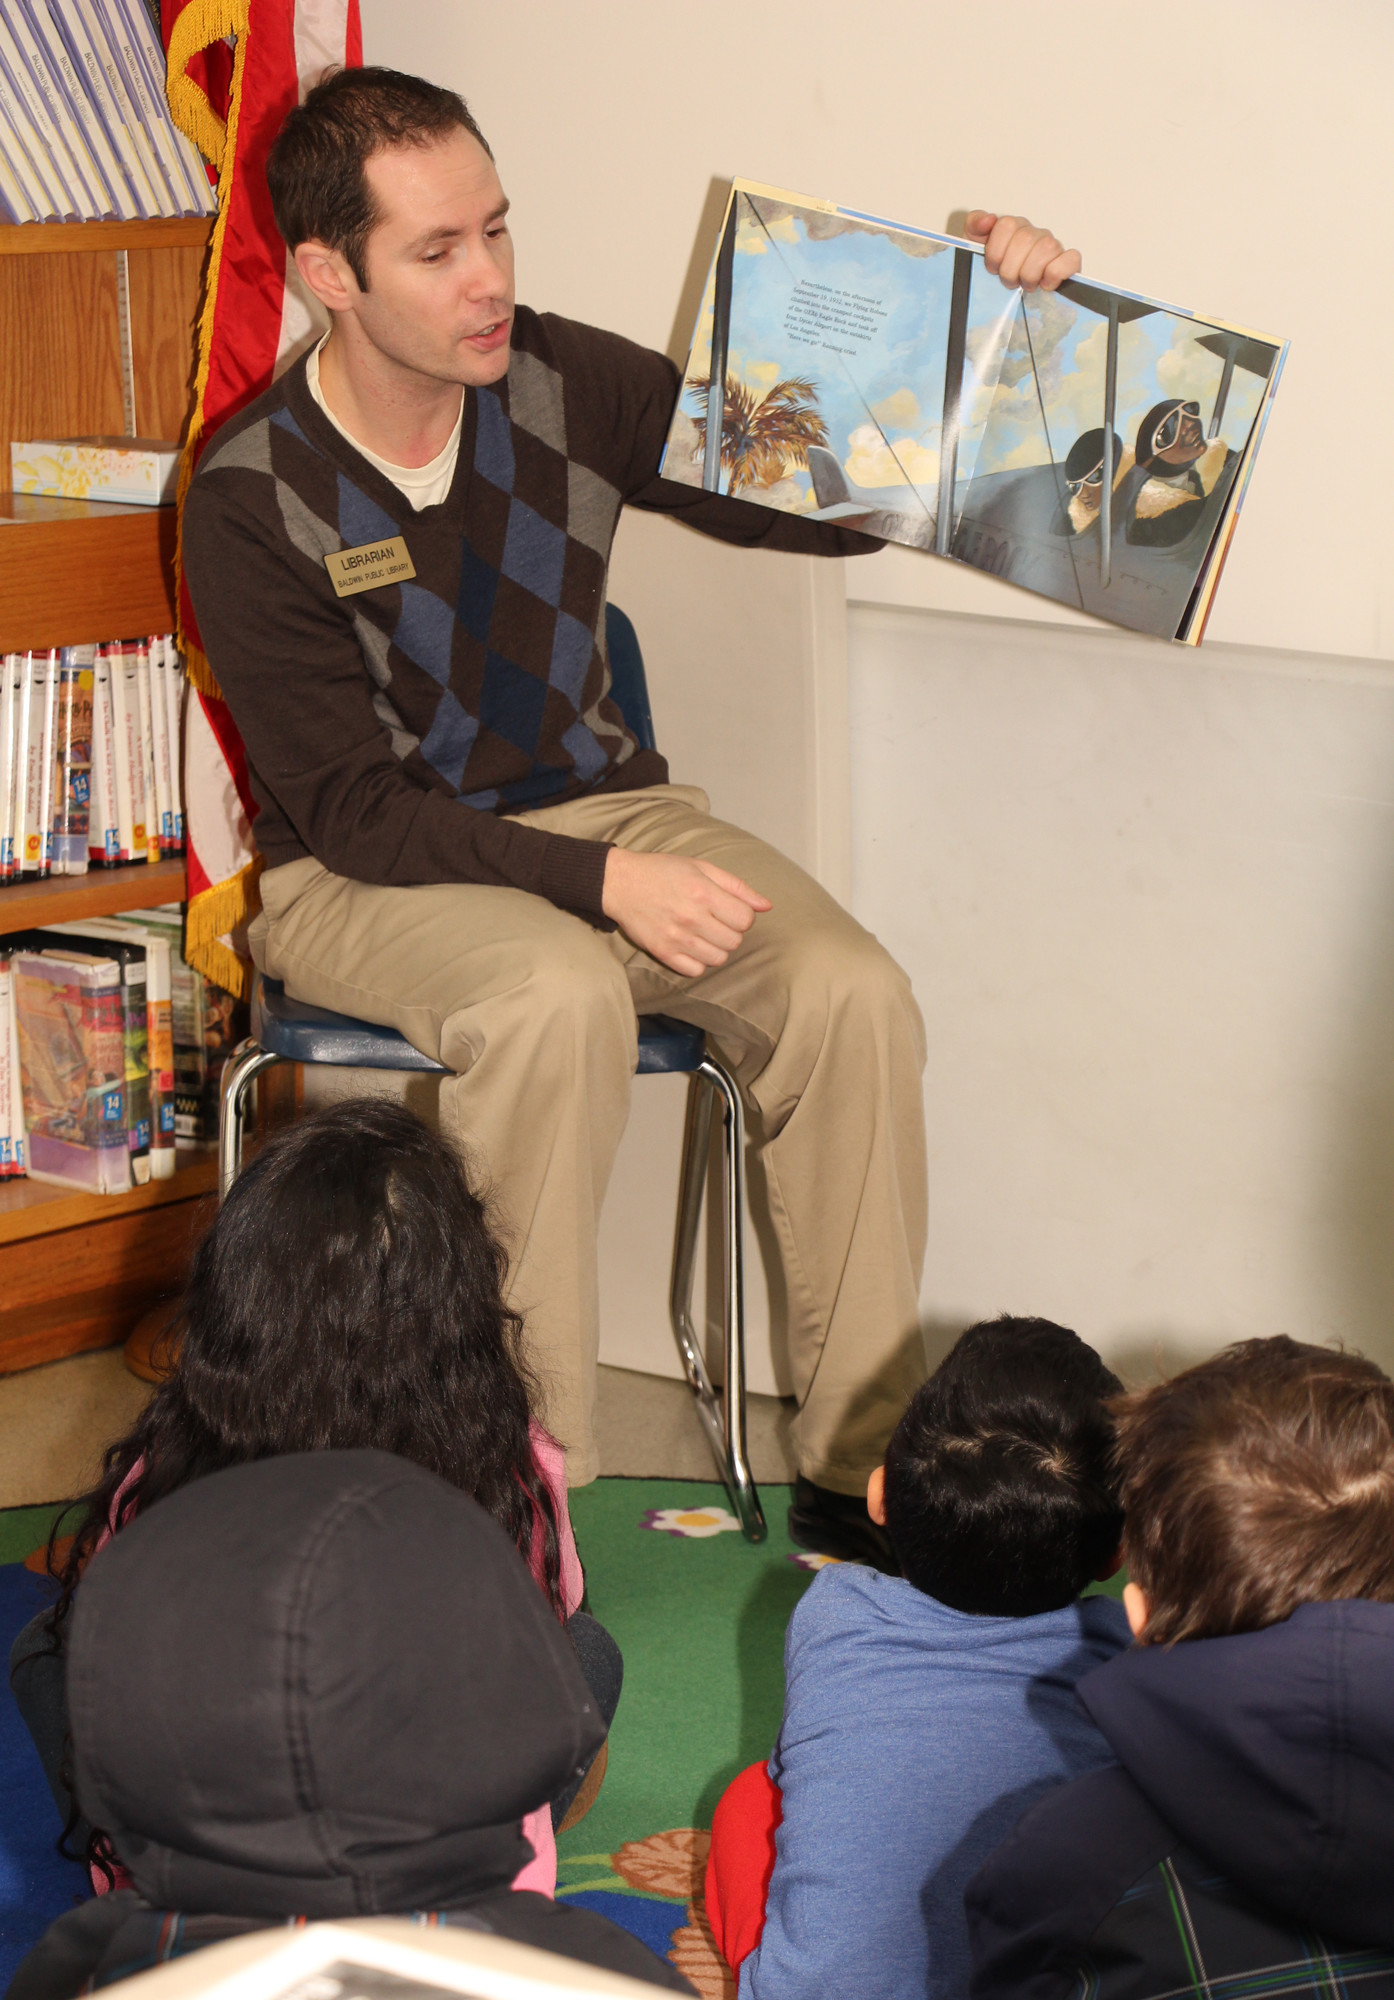 VonButtgereit, a children’s librarian, read “The Hallelajah Flight” by Phil Bildner to kids in attendance.